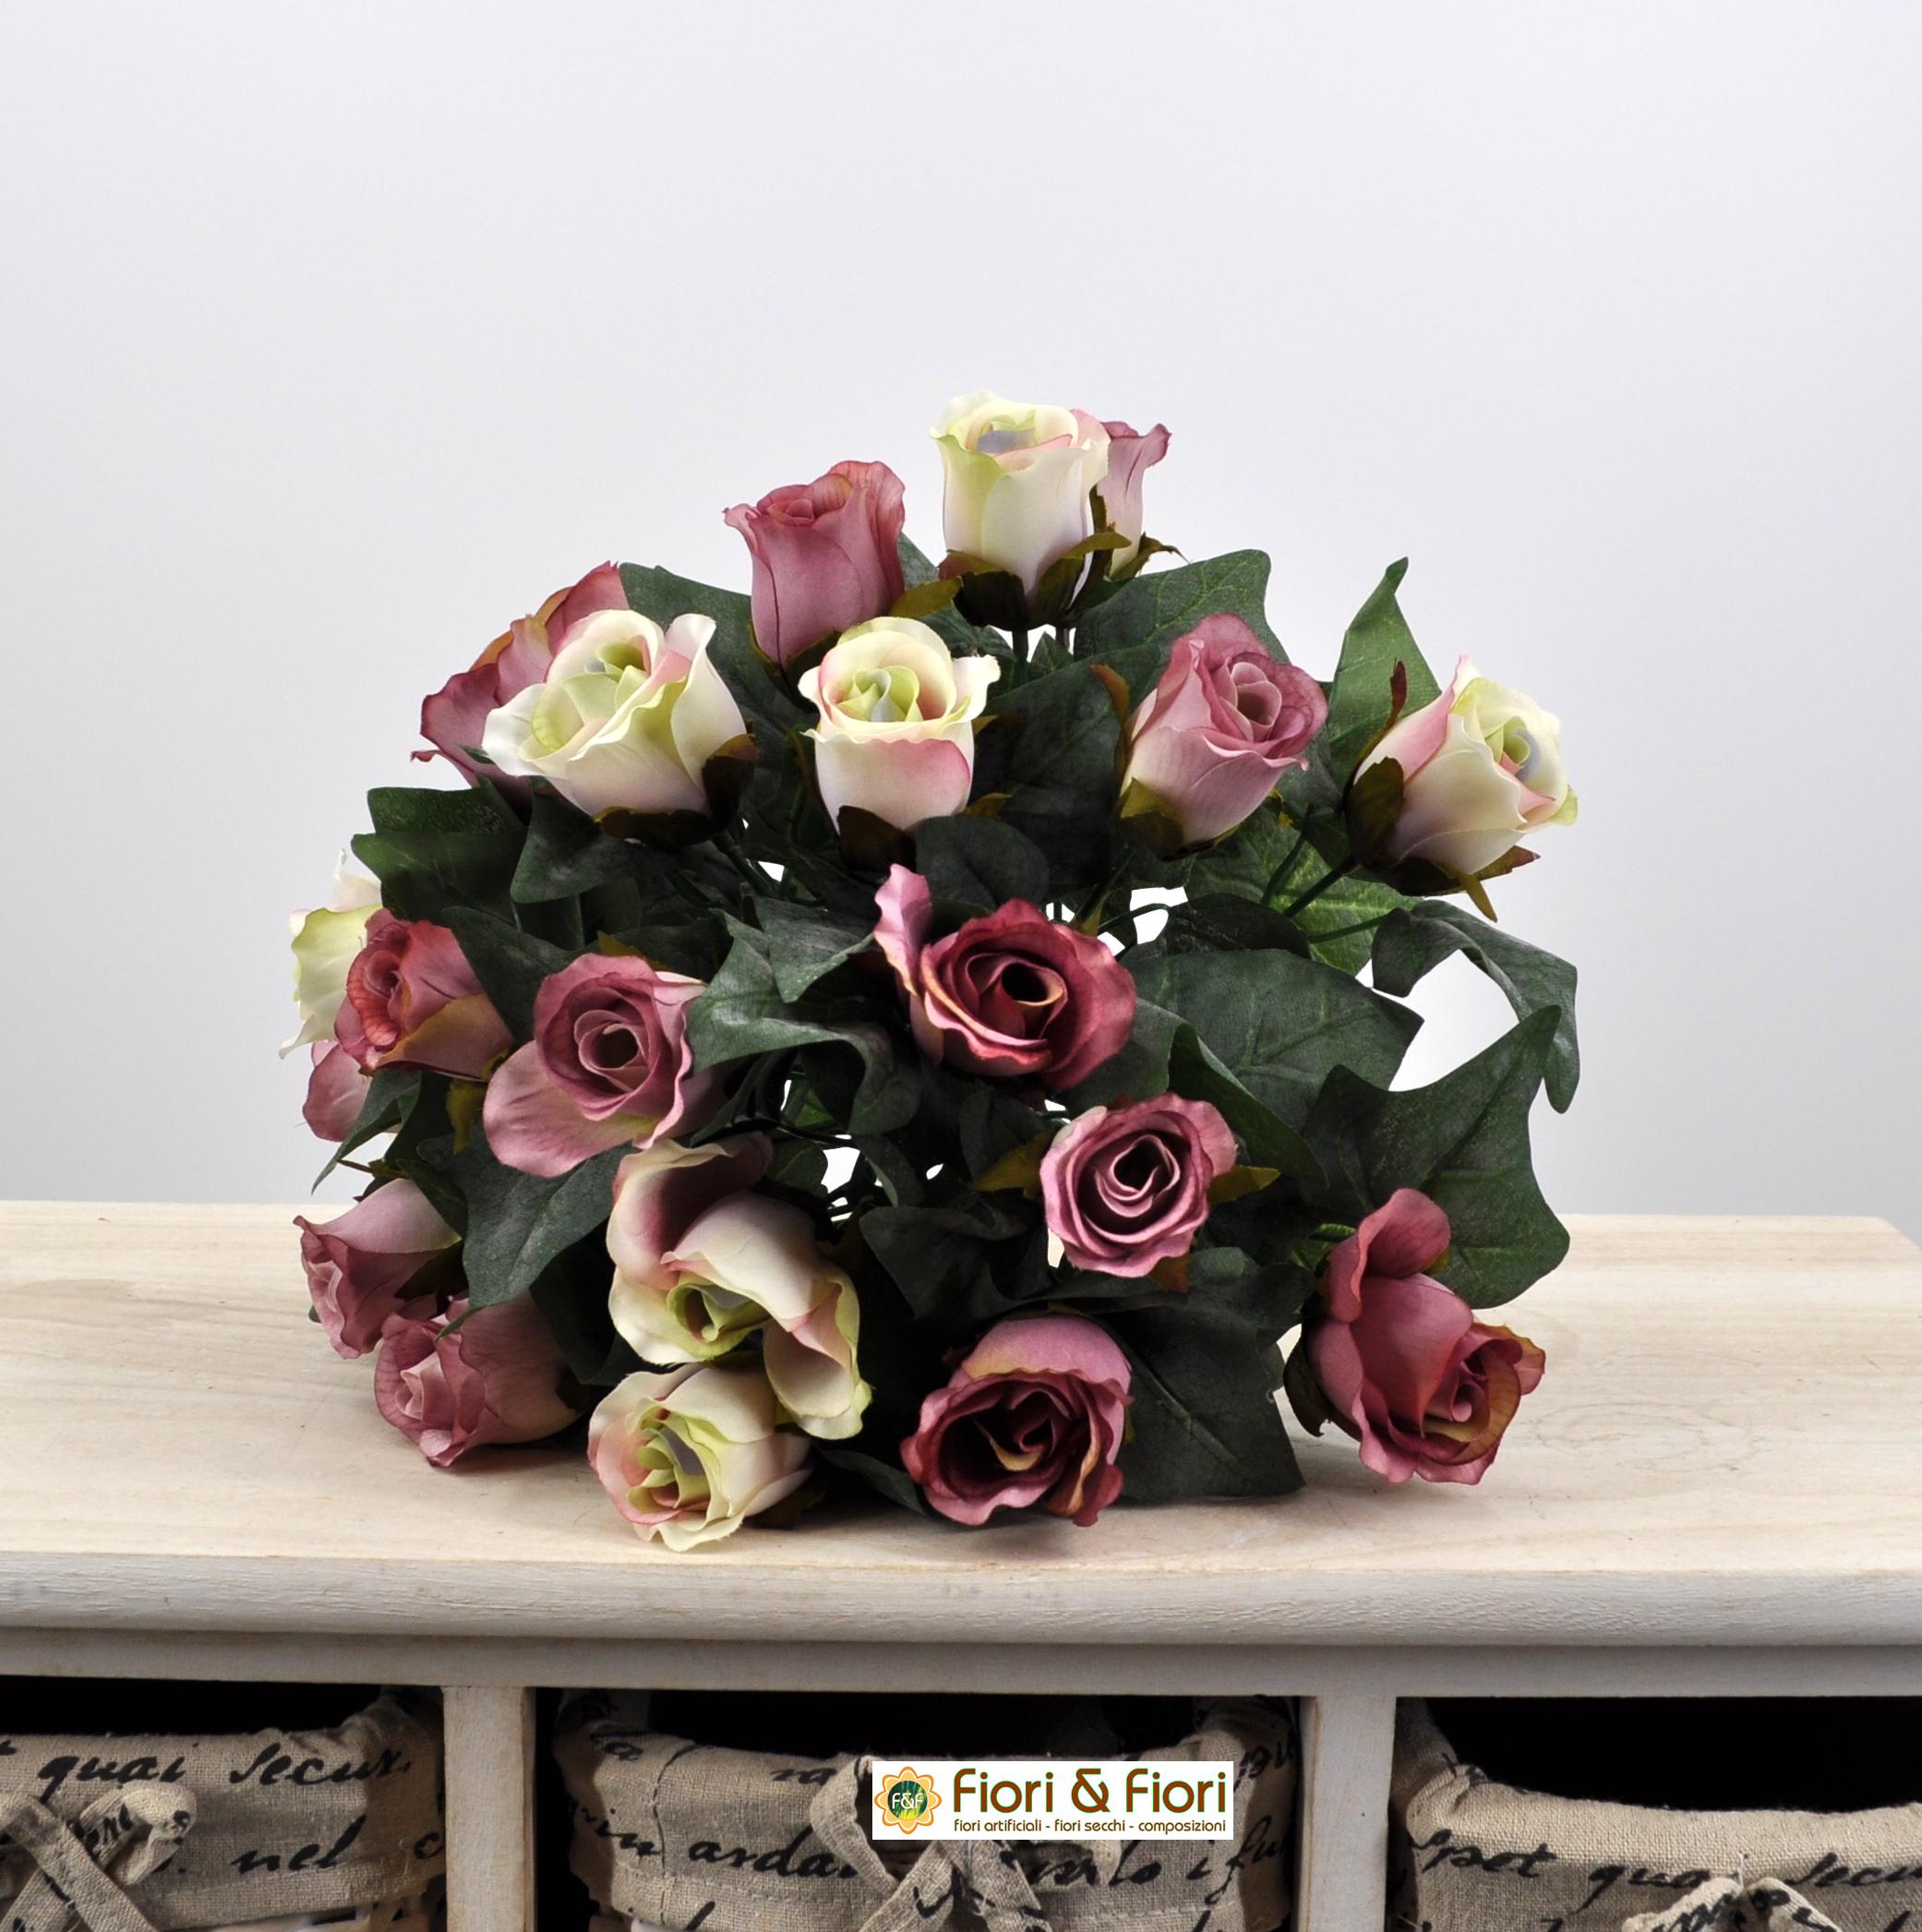 TRMF Fiori artificiali, 30 pezzi, rose coreriali, bouquet di rose